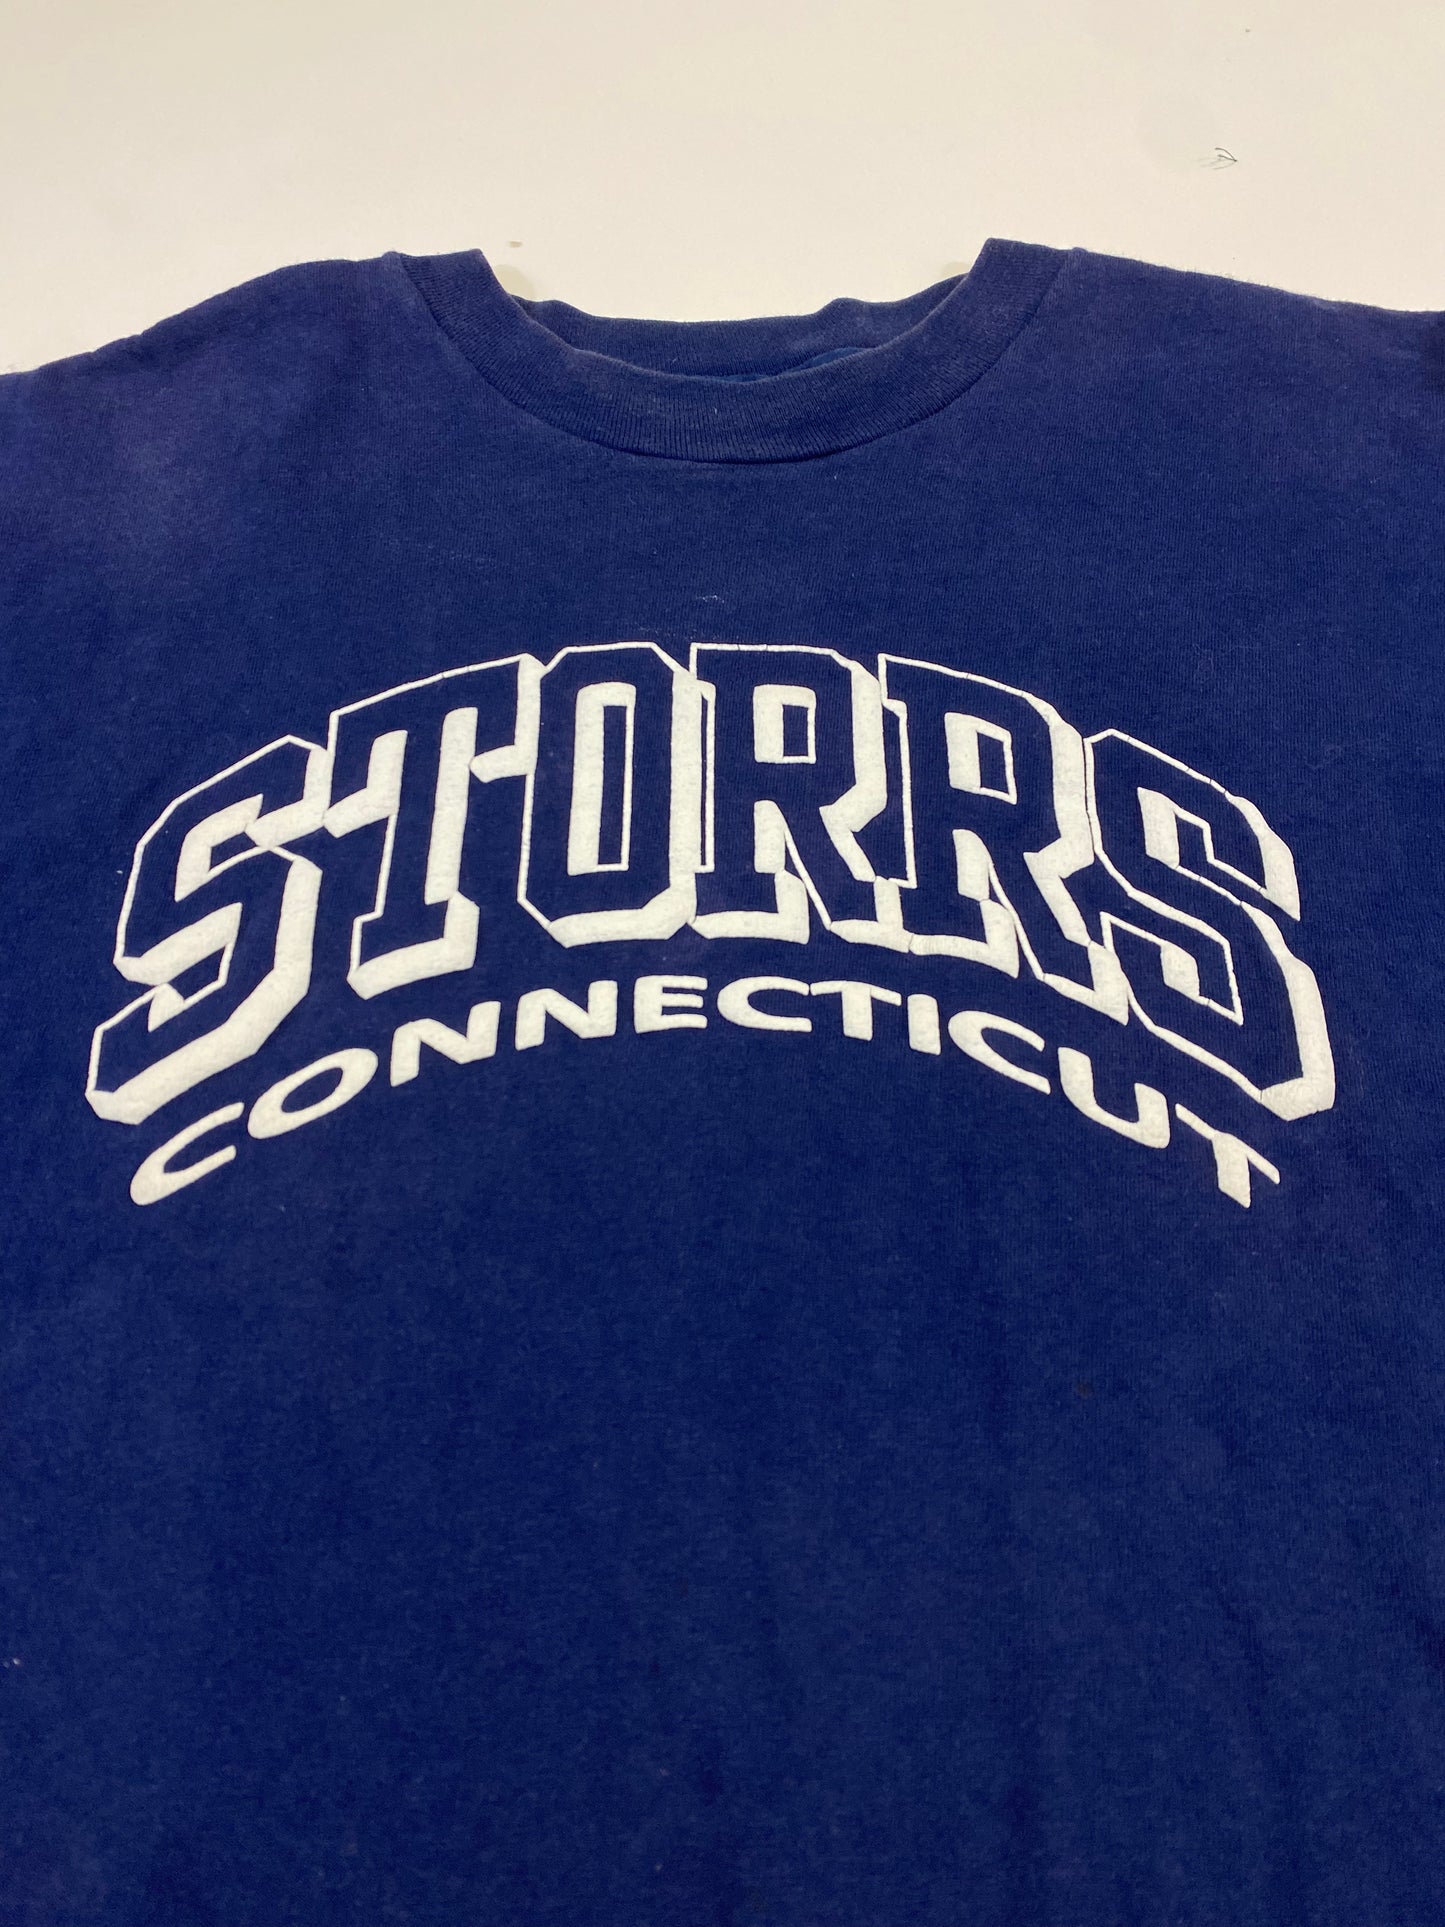 1980’s Storrs Connecticut UConn T-Shirt